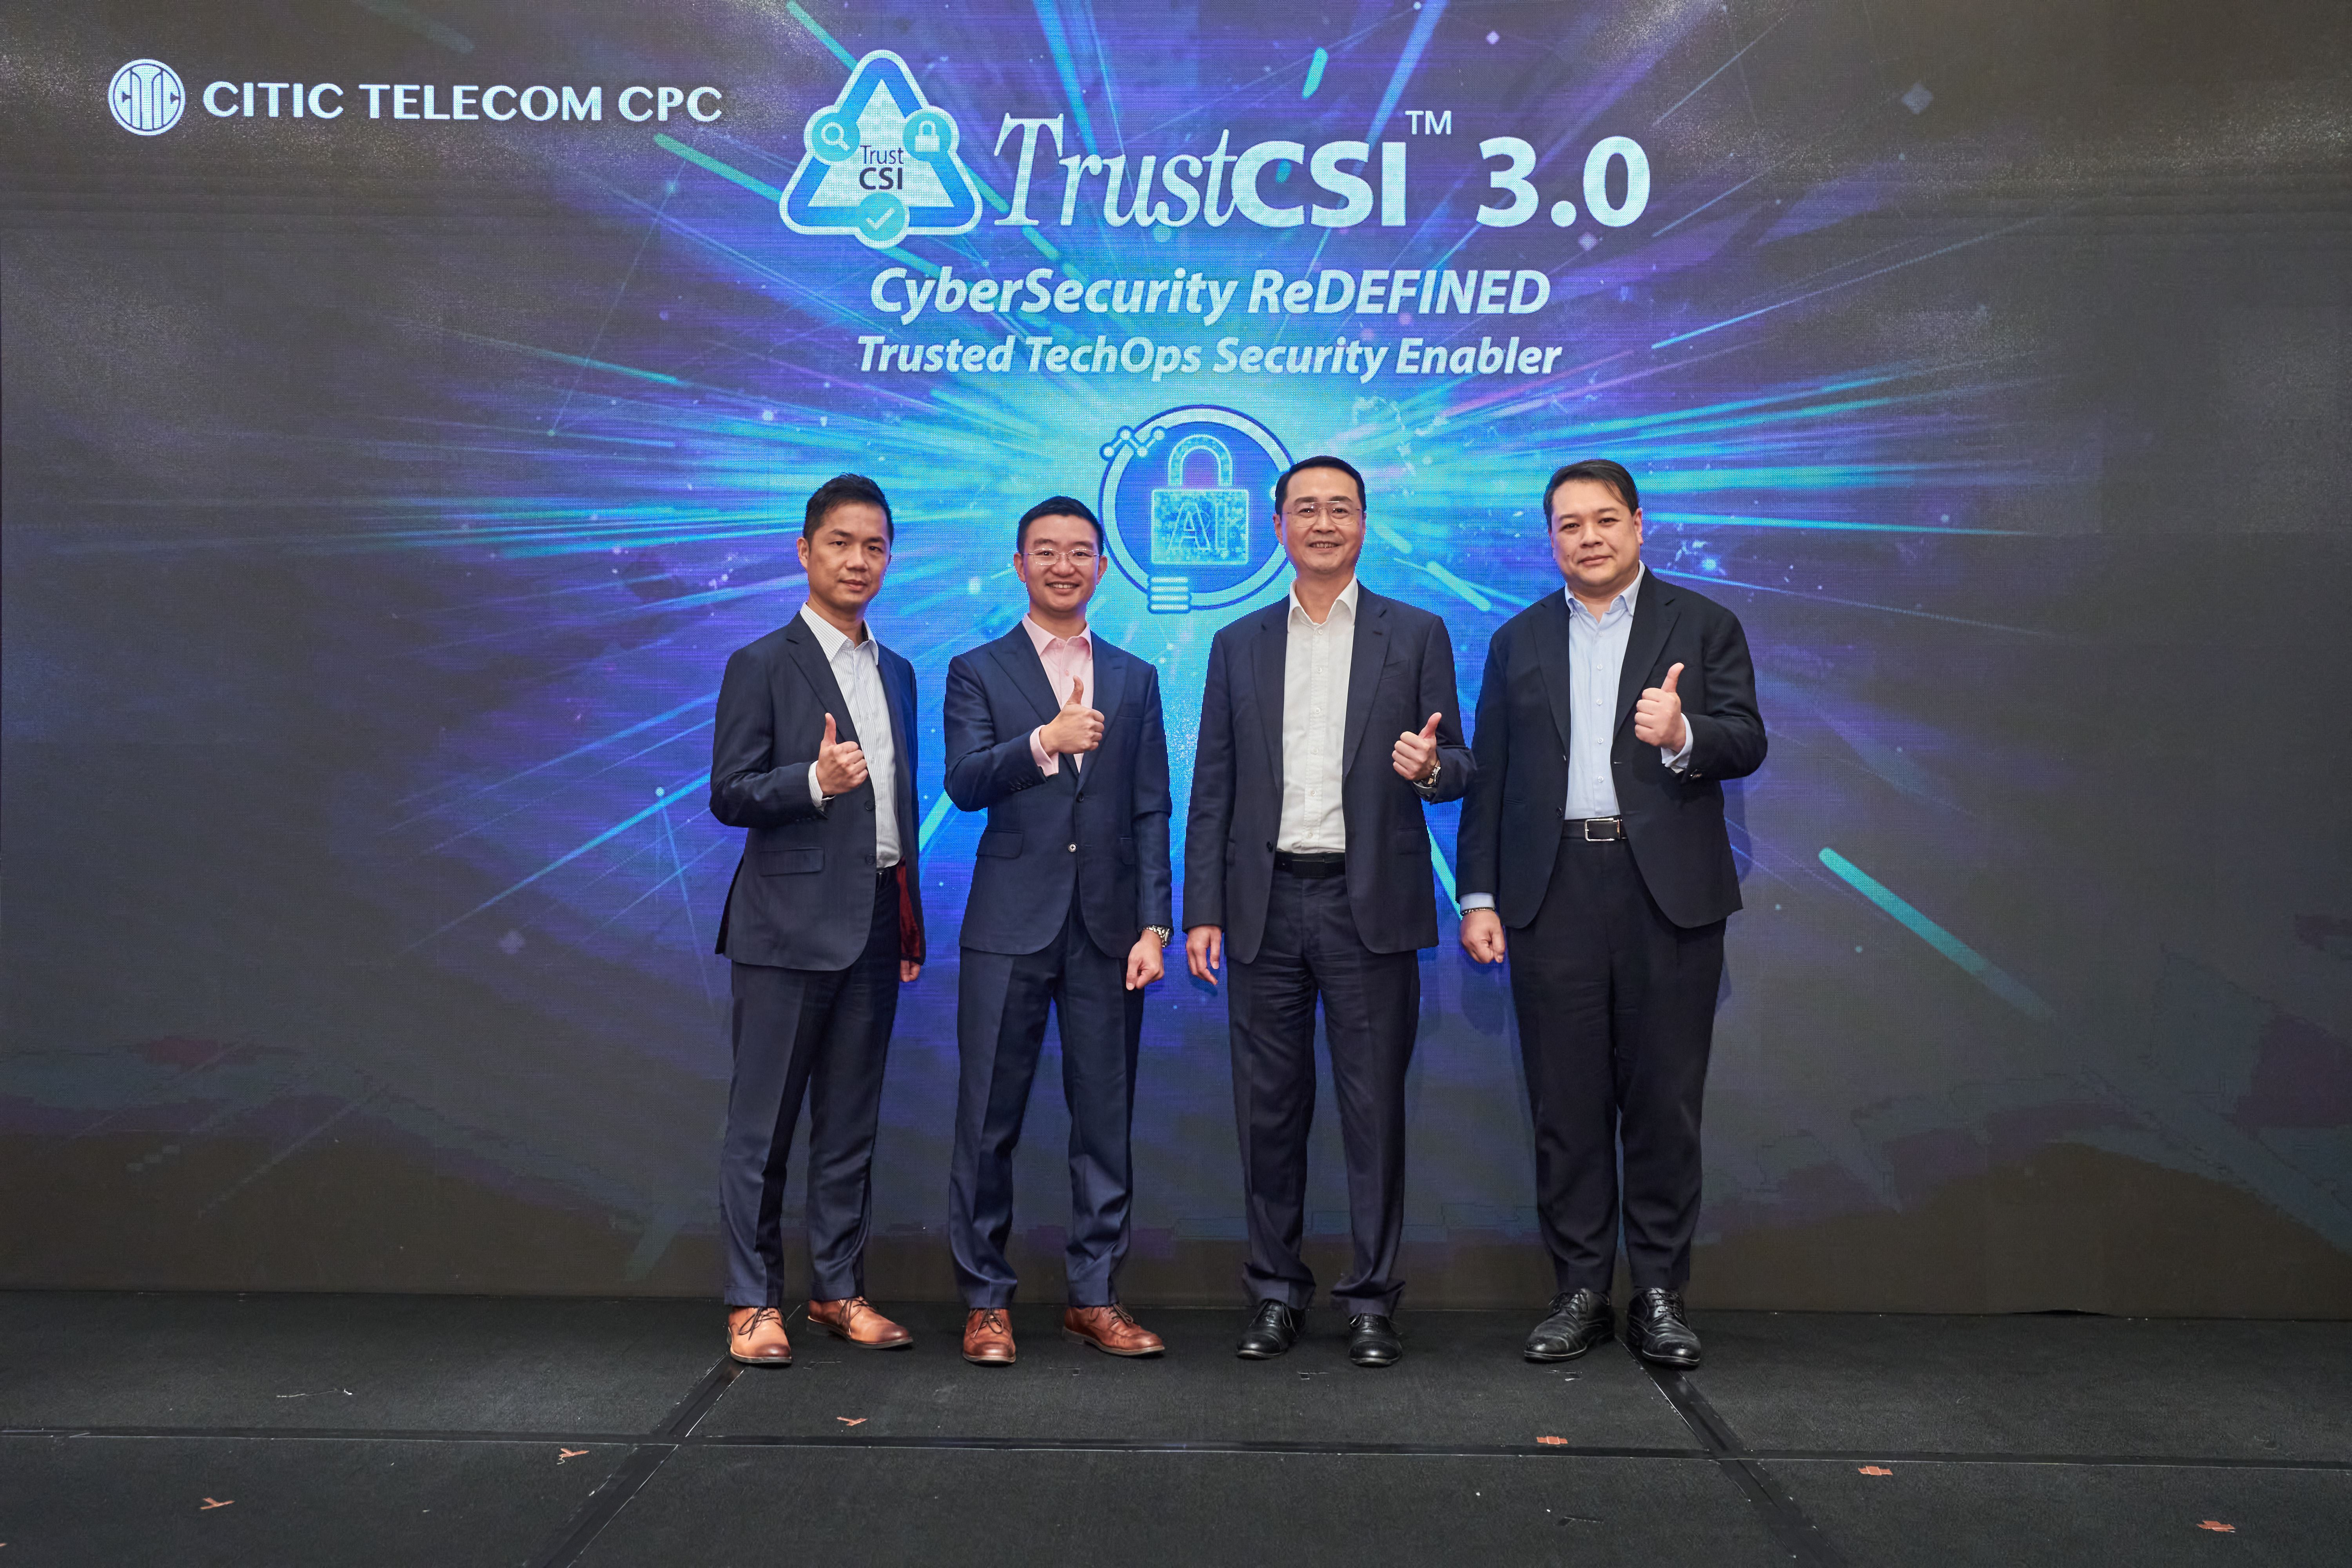 中信國際電訊CPC推TrustCSI 3.0 主動防禦提升安全運作中心能力 